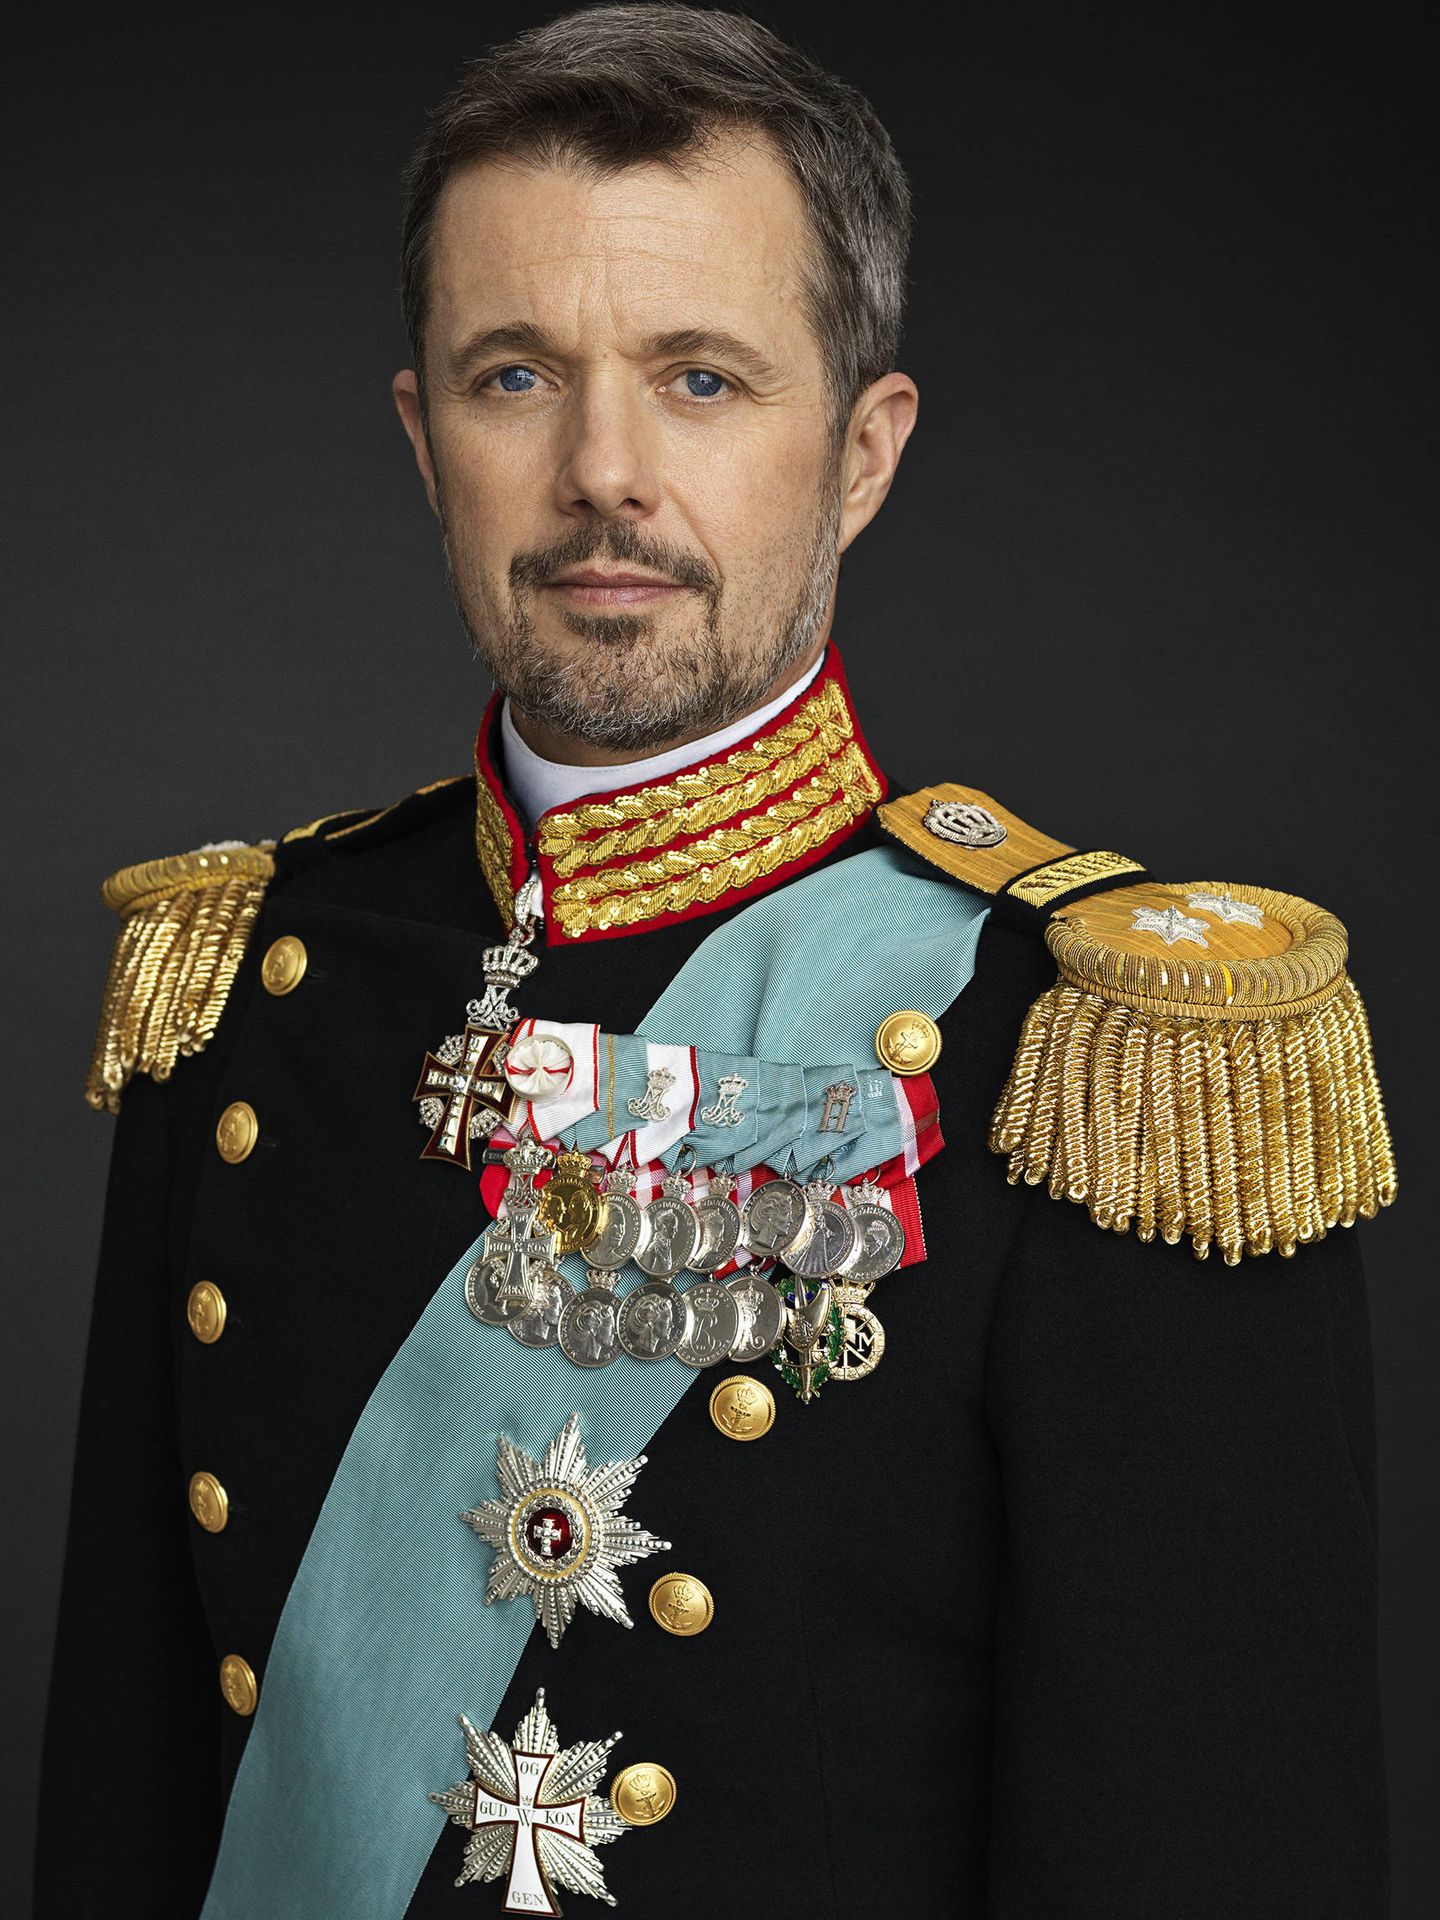 Federico de Dinamarca, con traje de gala. (Steen Evald9